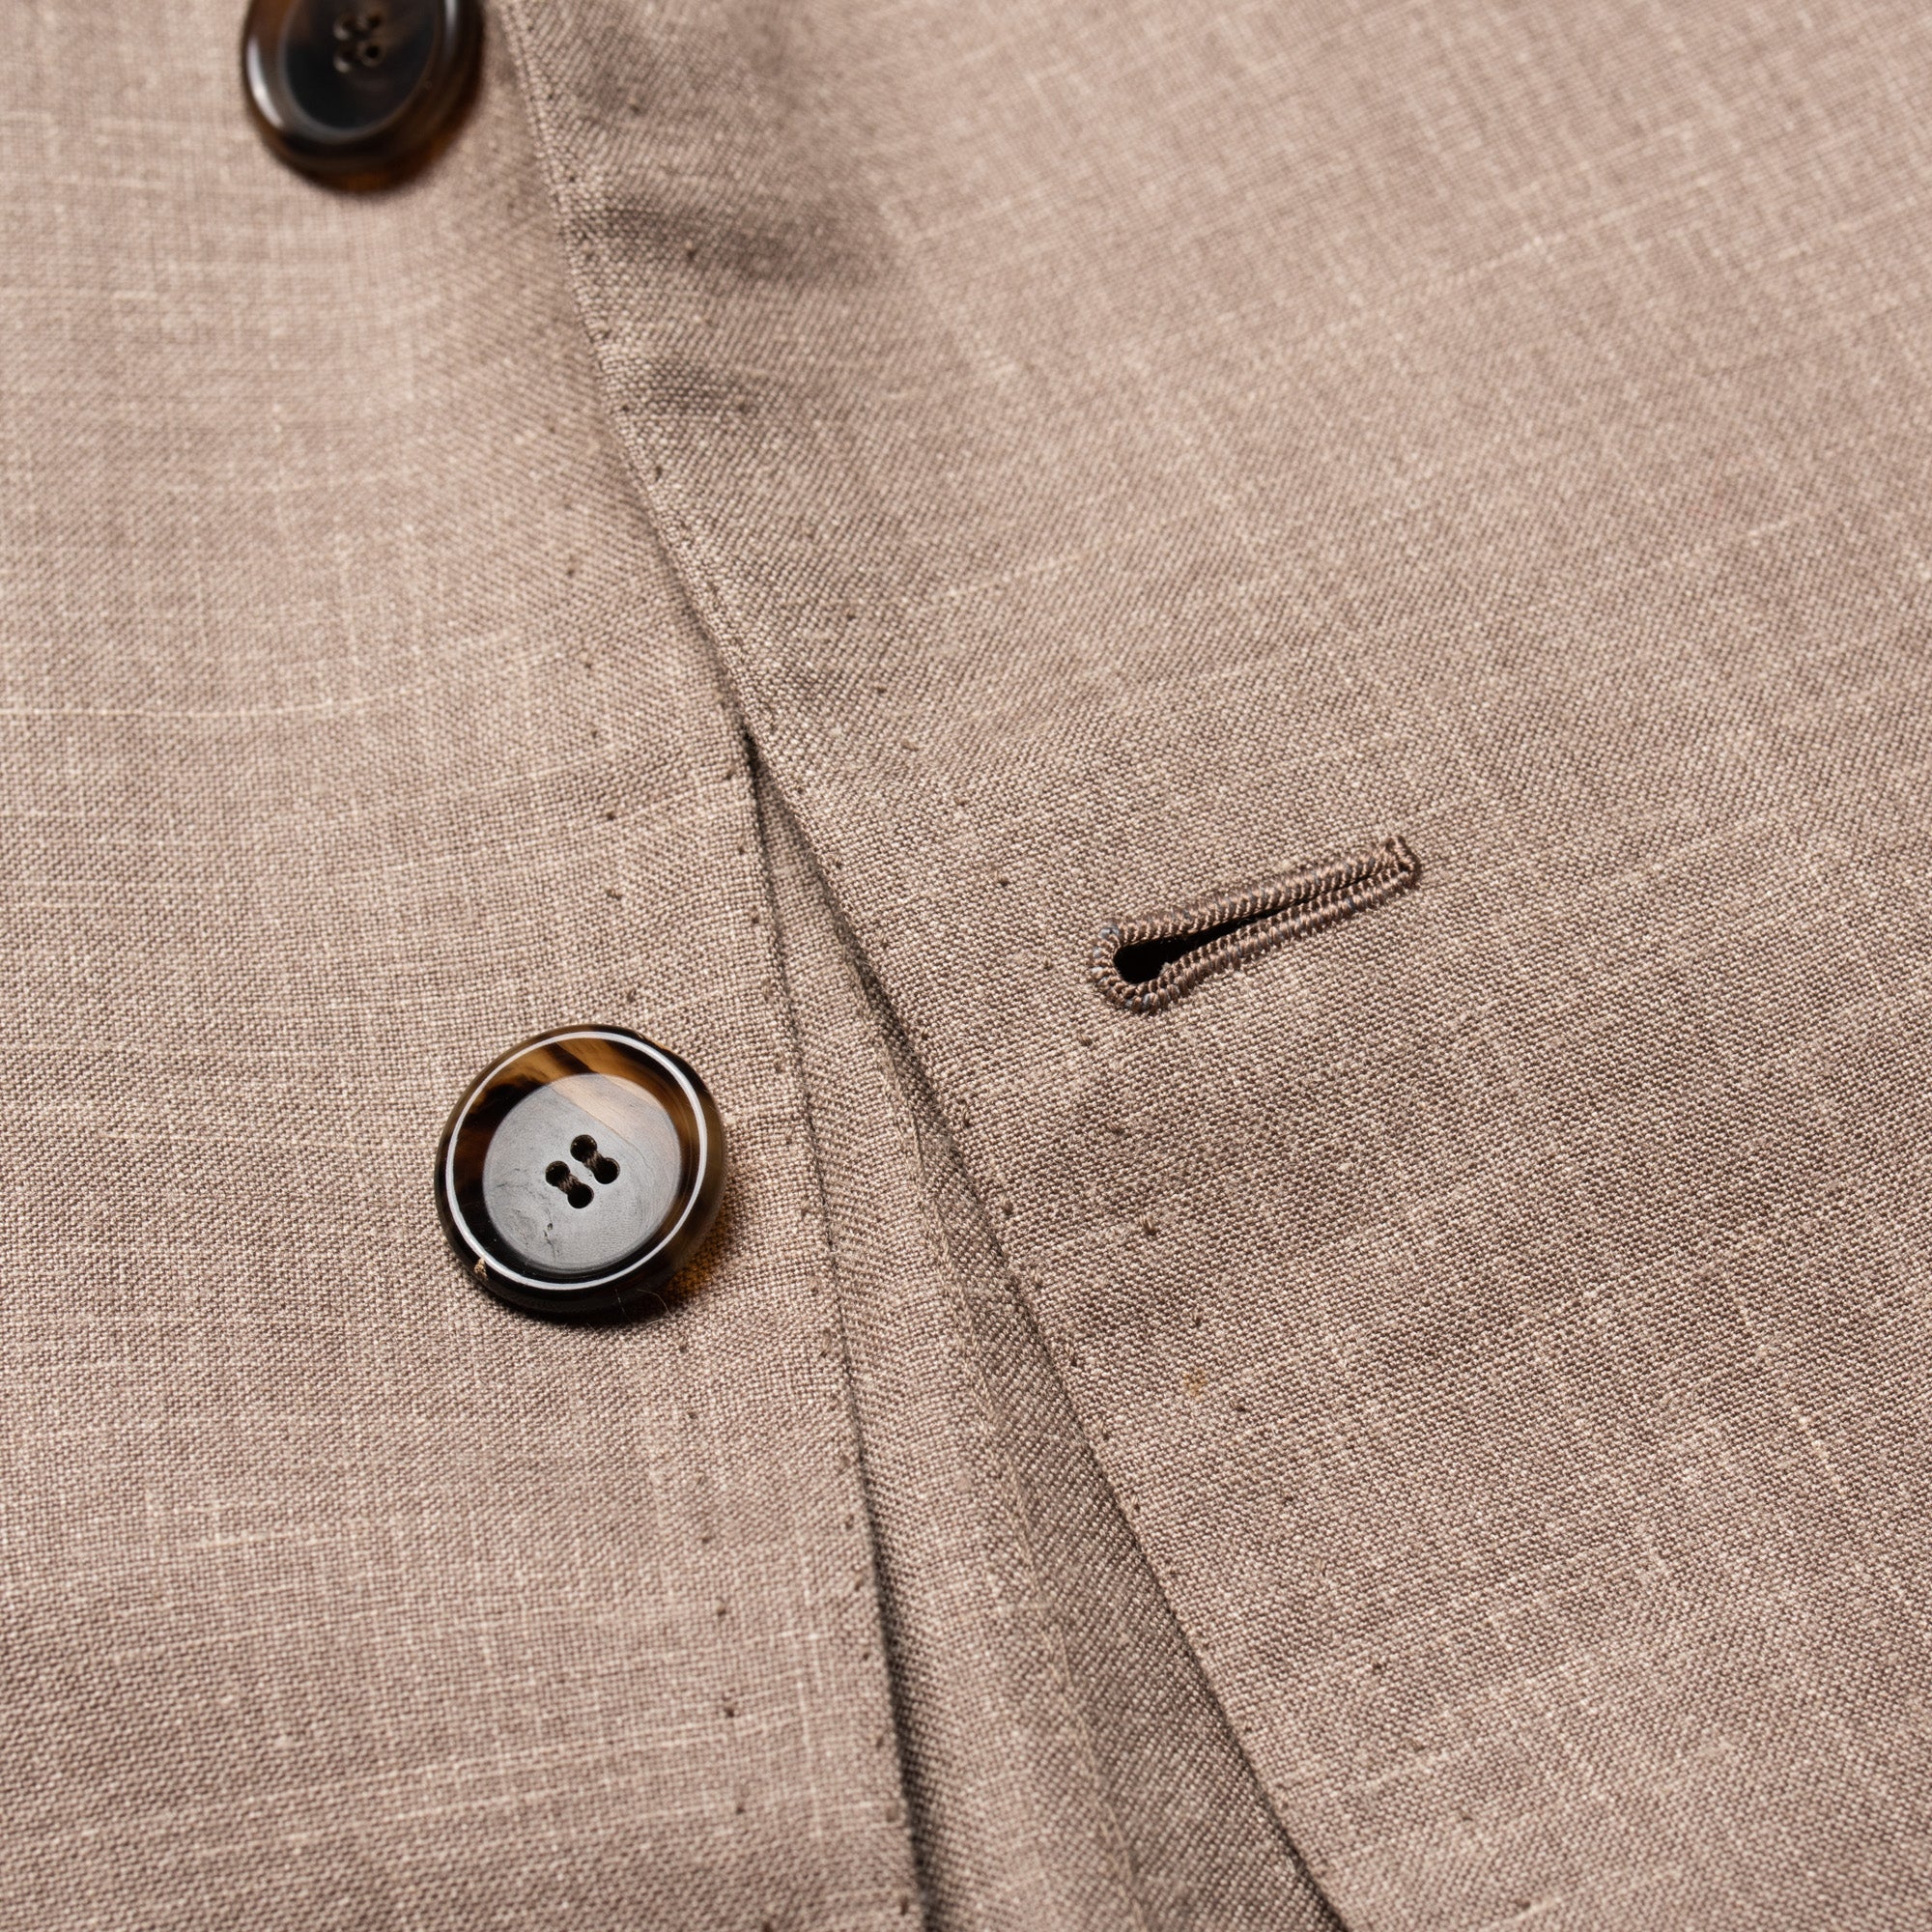 CESARE ATTOLINI for M.BARDELLI Gray Wool-Silk-Linen Jacket EU 50 NEW US 40 CESARE ATTOLINI